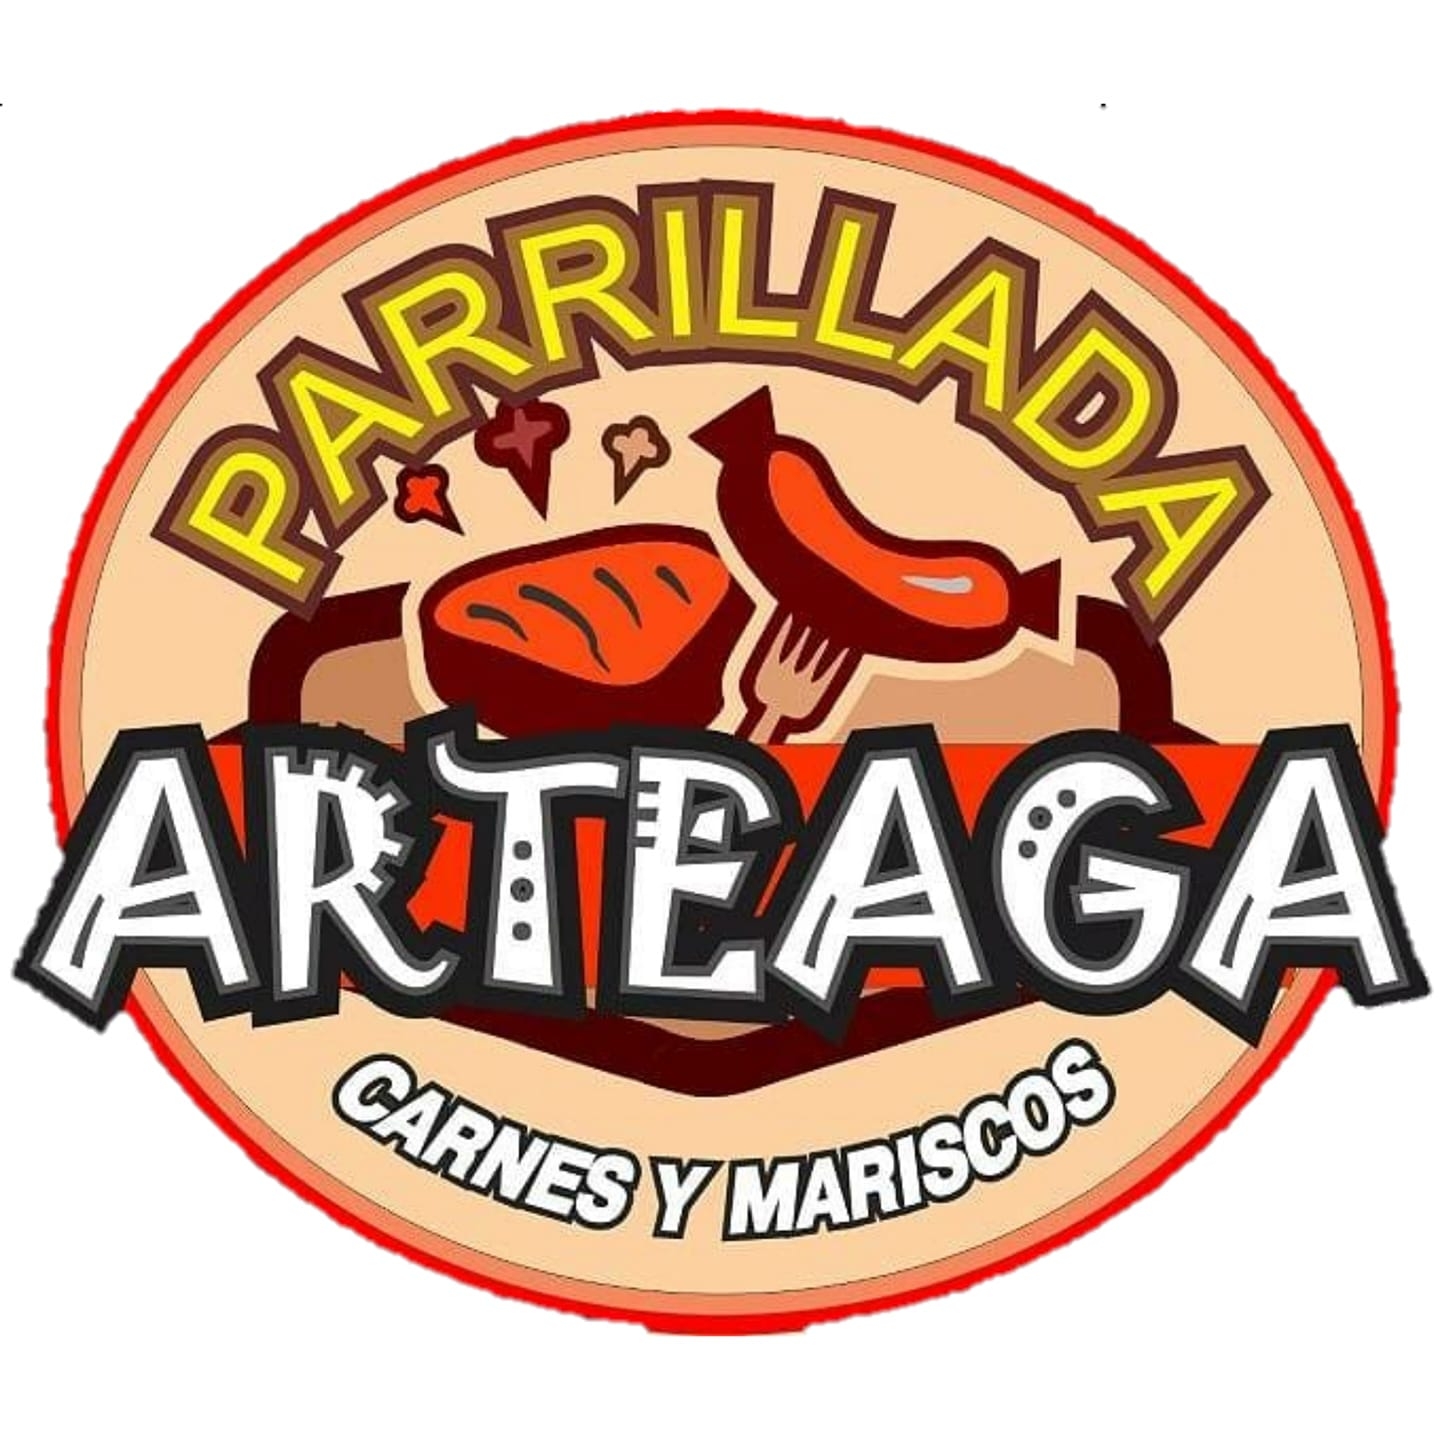 Parrillada Arteaga Centro-4095